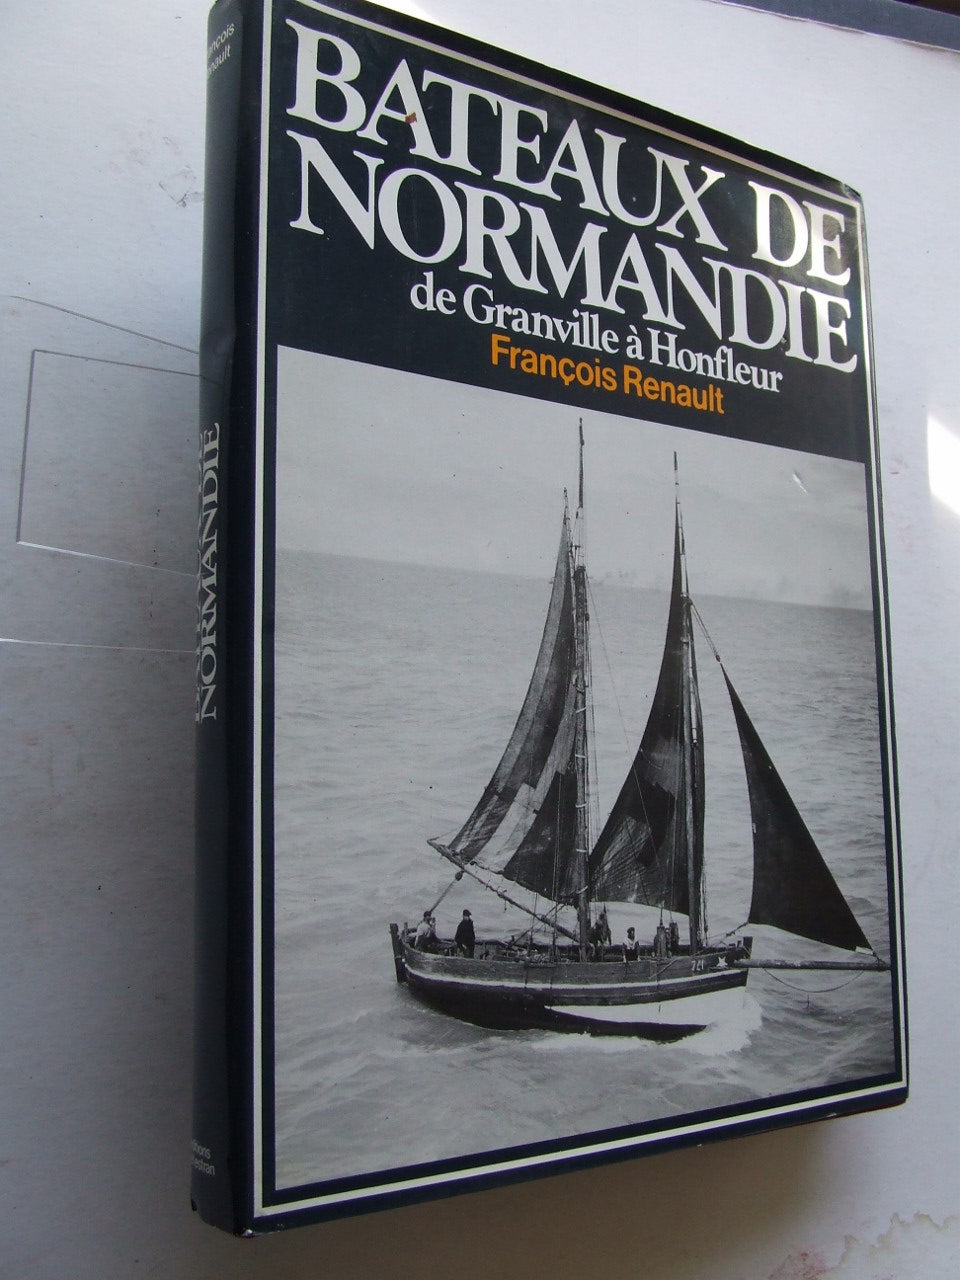 Bateaux de Normandie [de Granville à Honfleur]